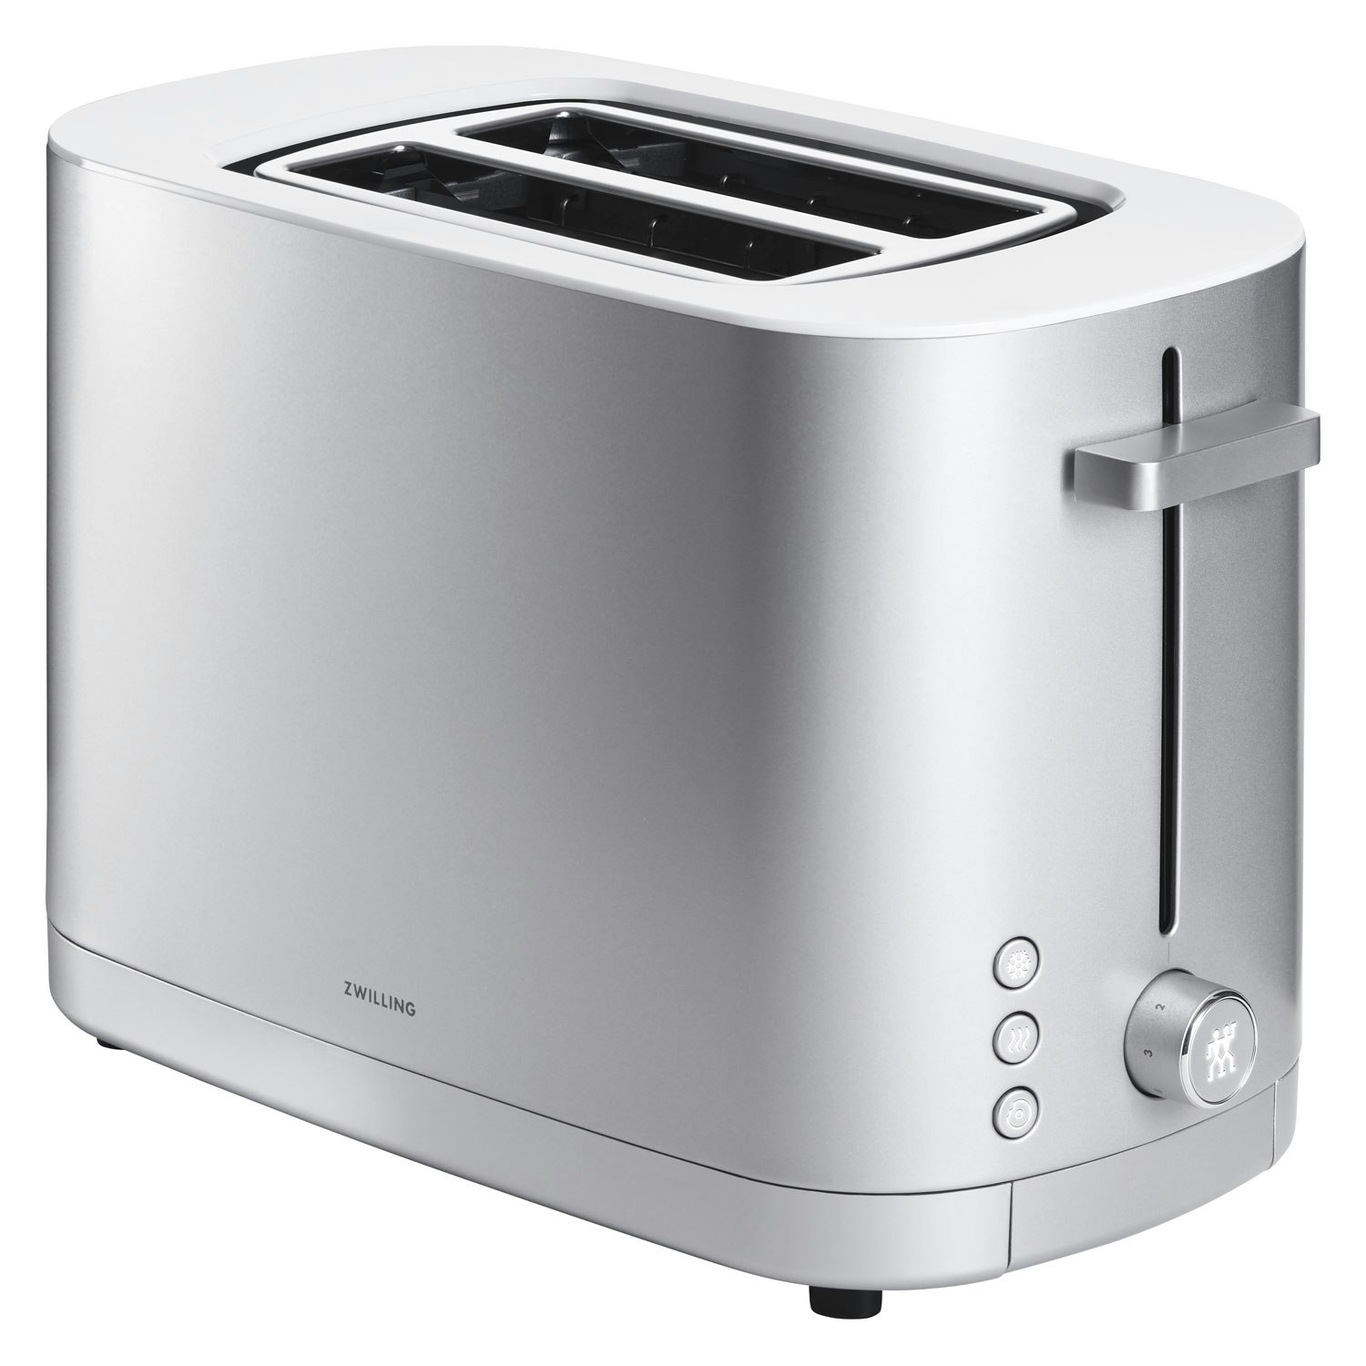 https://royaldesign.com/image/11/zwilling-enfinigy-toaster-2-slices-0?w=800&quality=80